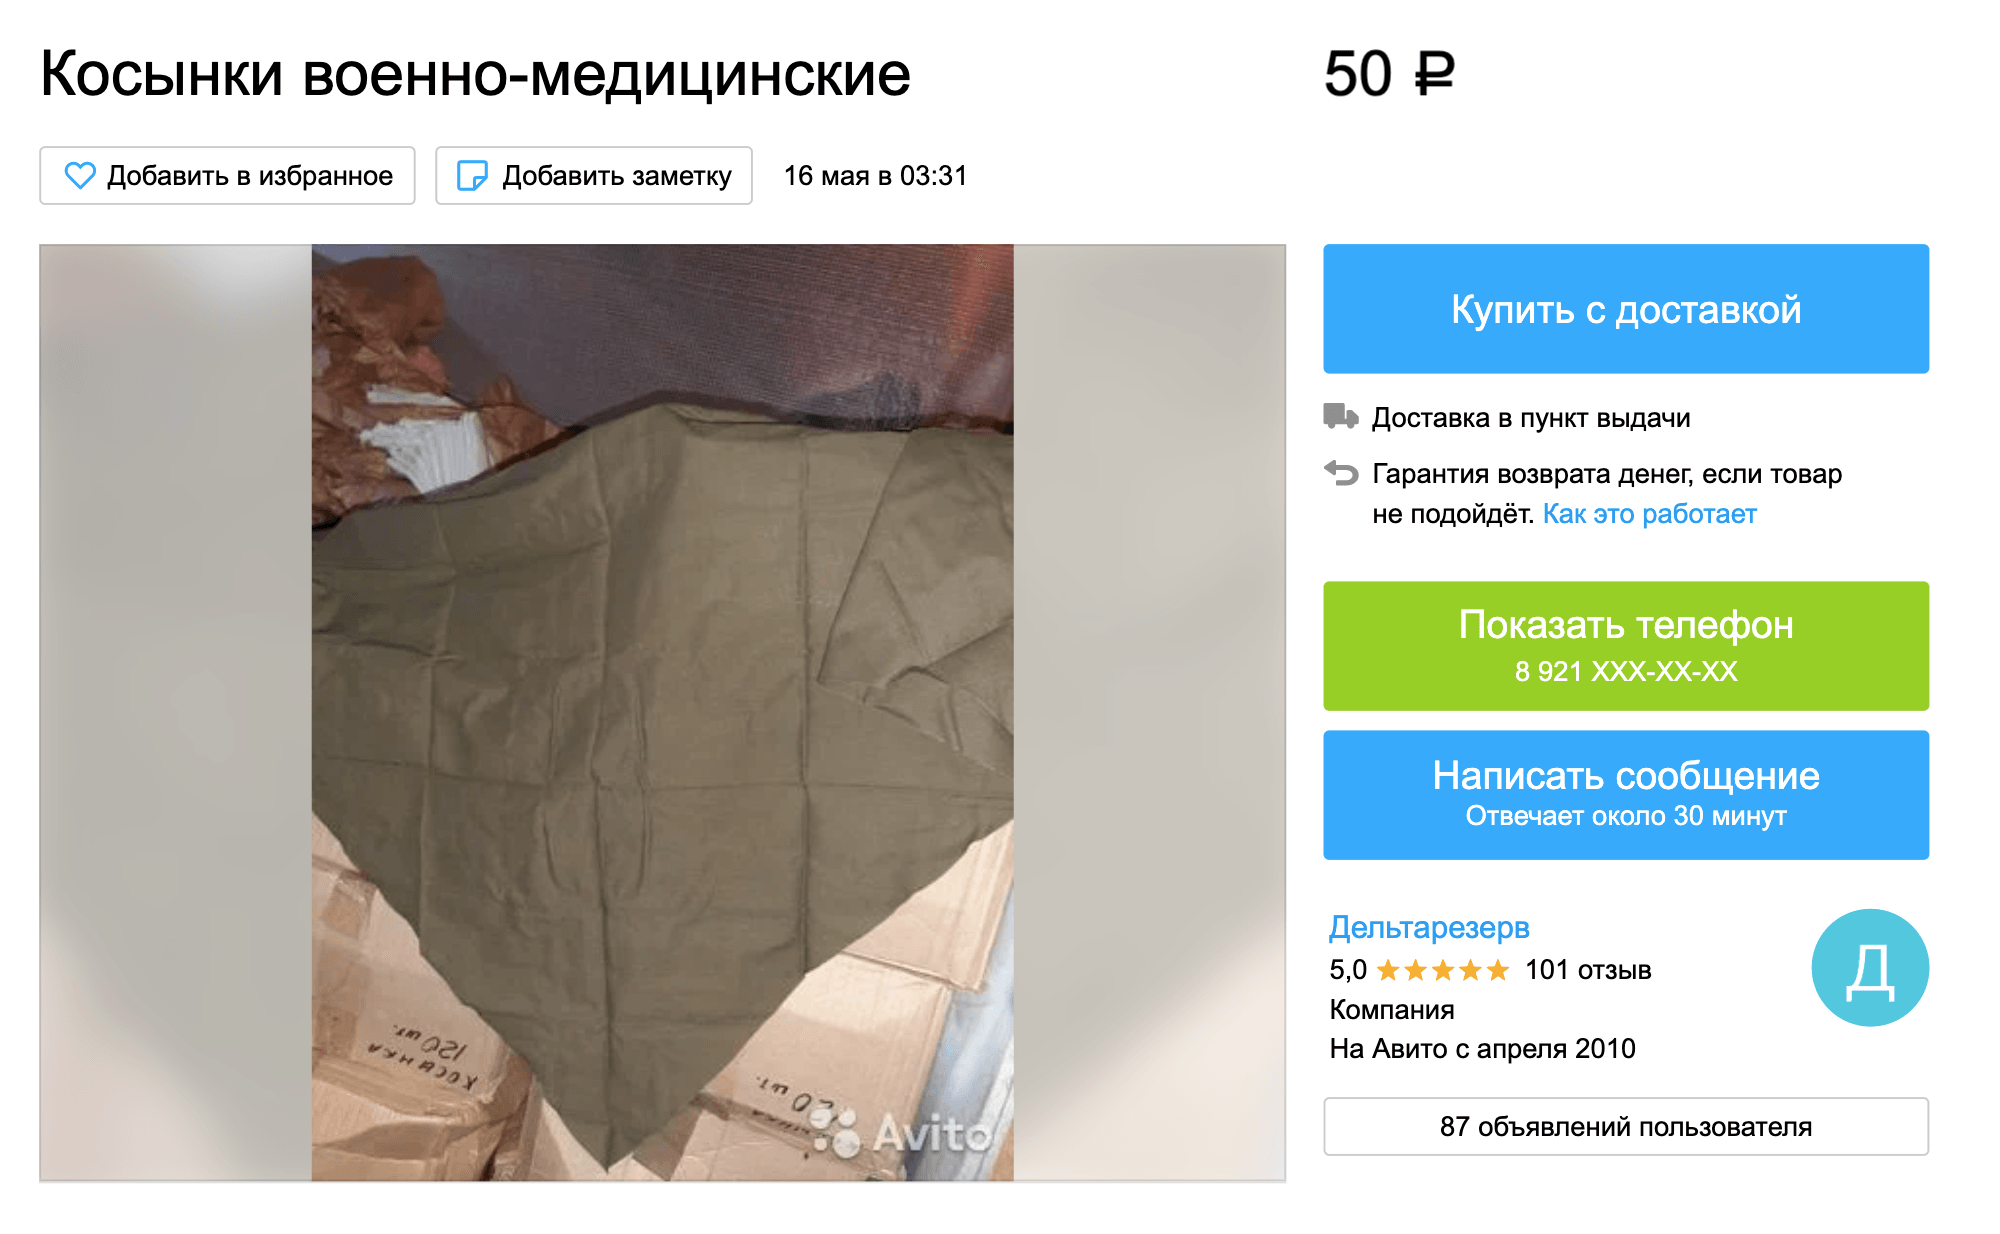 Медицинская косынка времен СССР из хлопка стоит на «Авито» от 50 ₽